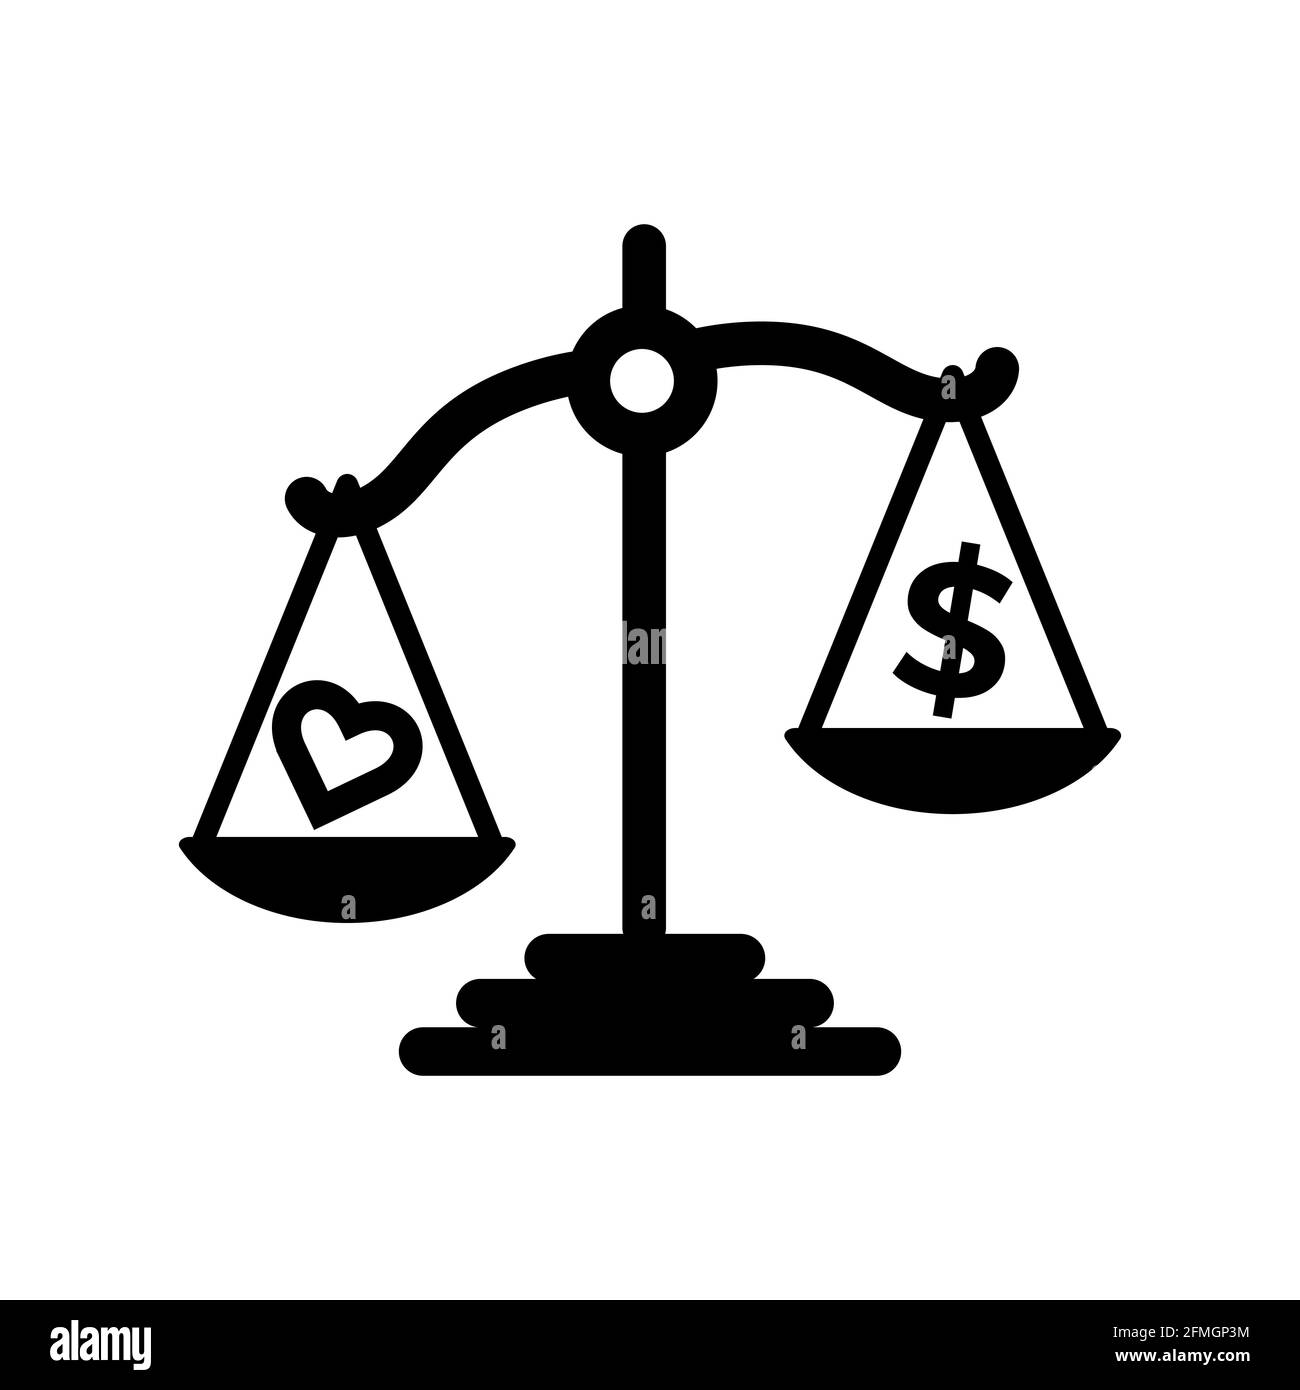 Skalieren Sie die Vektorgrafik „Gerechtigkeit“ mit dem Symbol „Herz und Geld“. Gute Vorlage für Gerechtigkeit Design. Stock Vektor